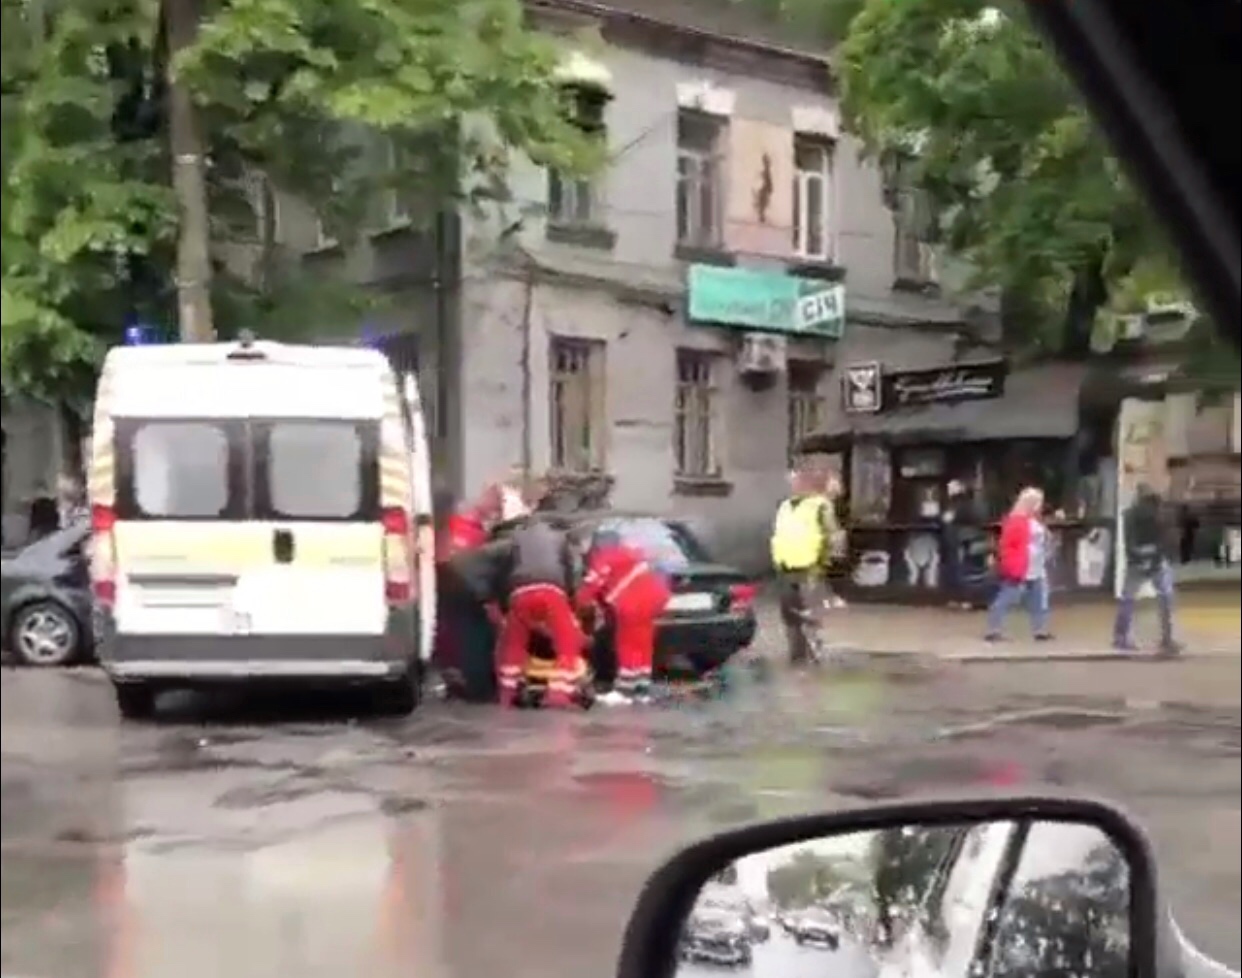 ОБНОВЛЕНО. ДТП в Запорожье: спасатели вырезают пострадавших, на месте работает две «скорые» (ВИДЕО, ФОТО)